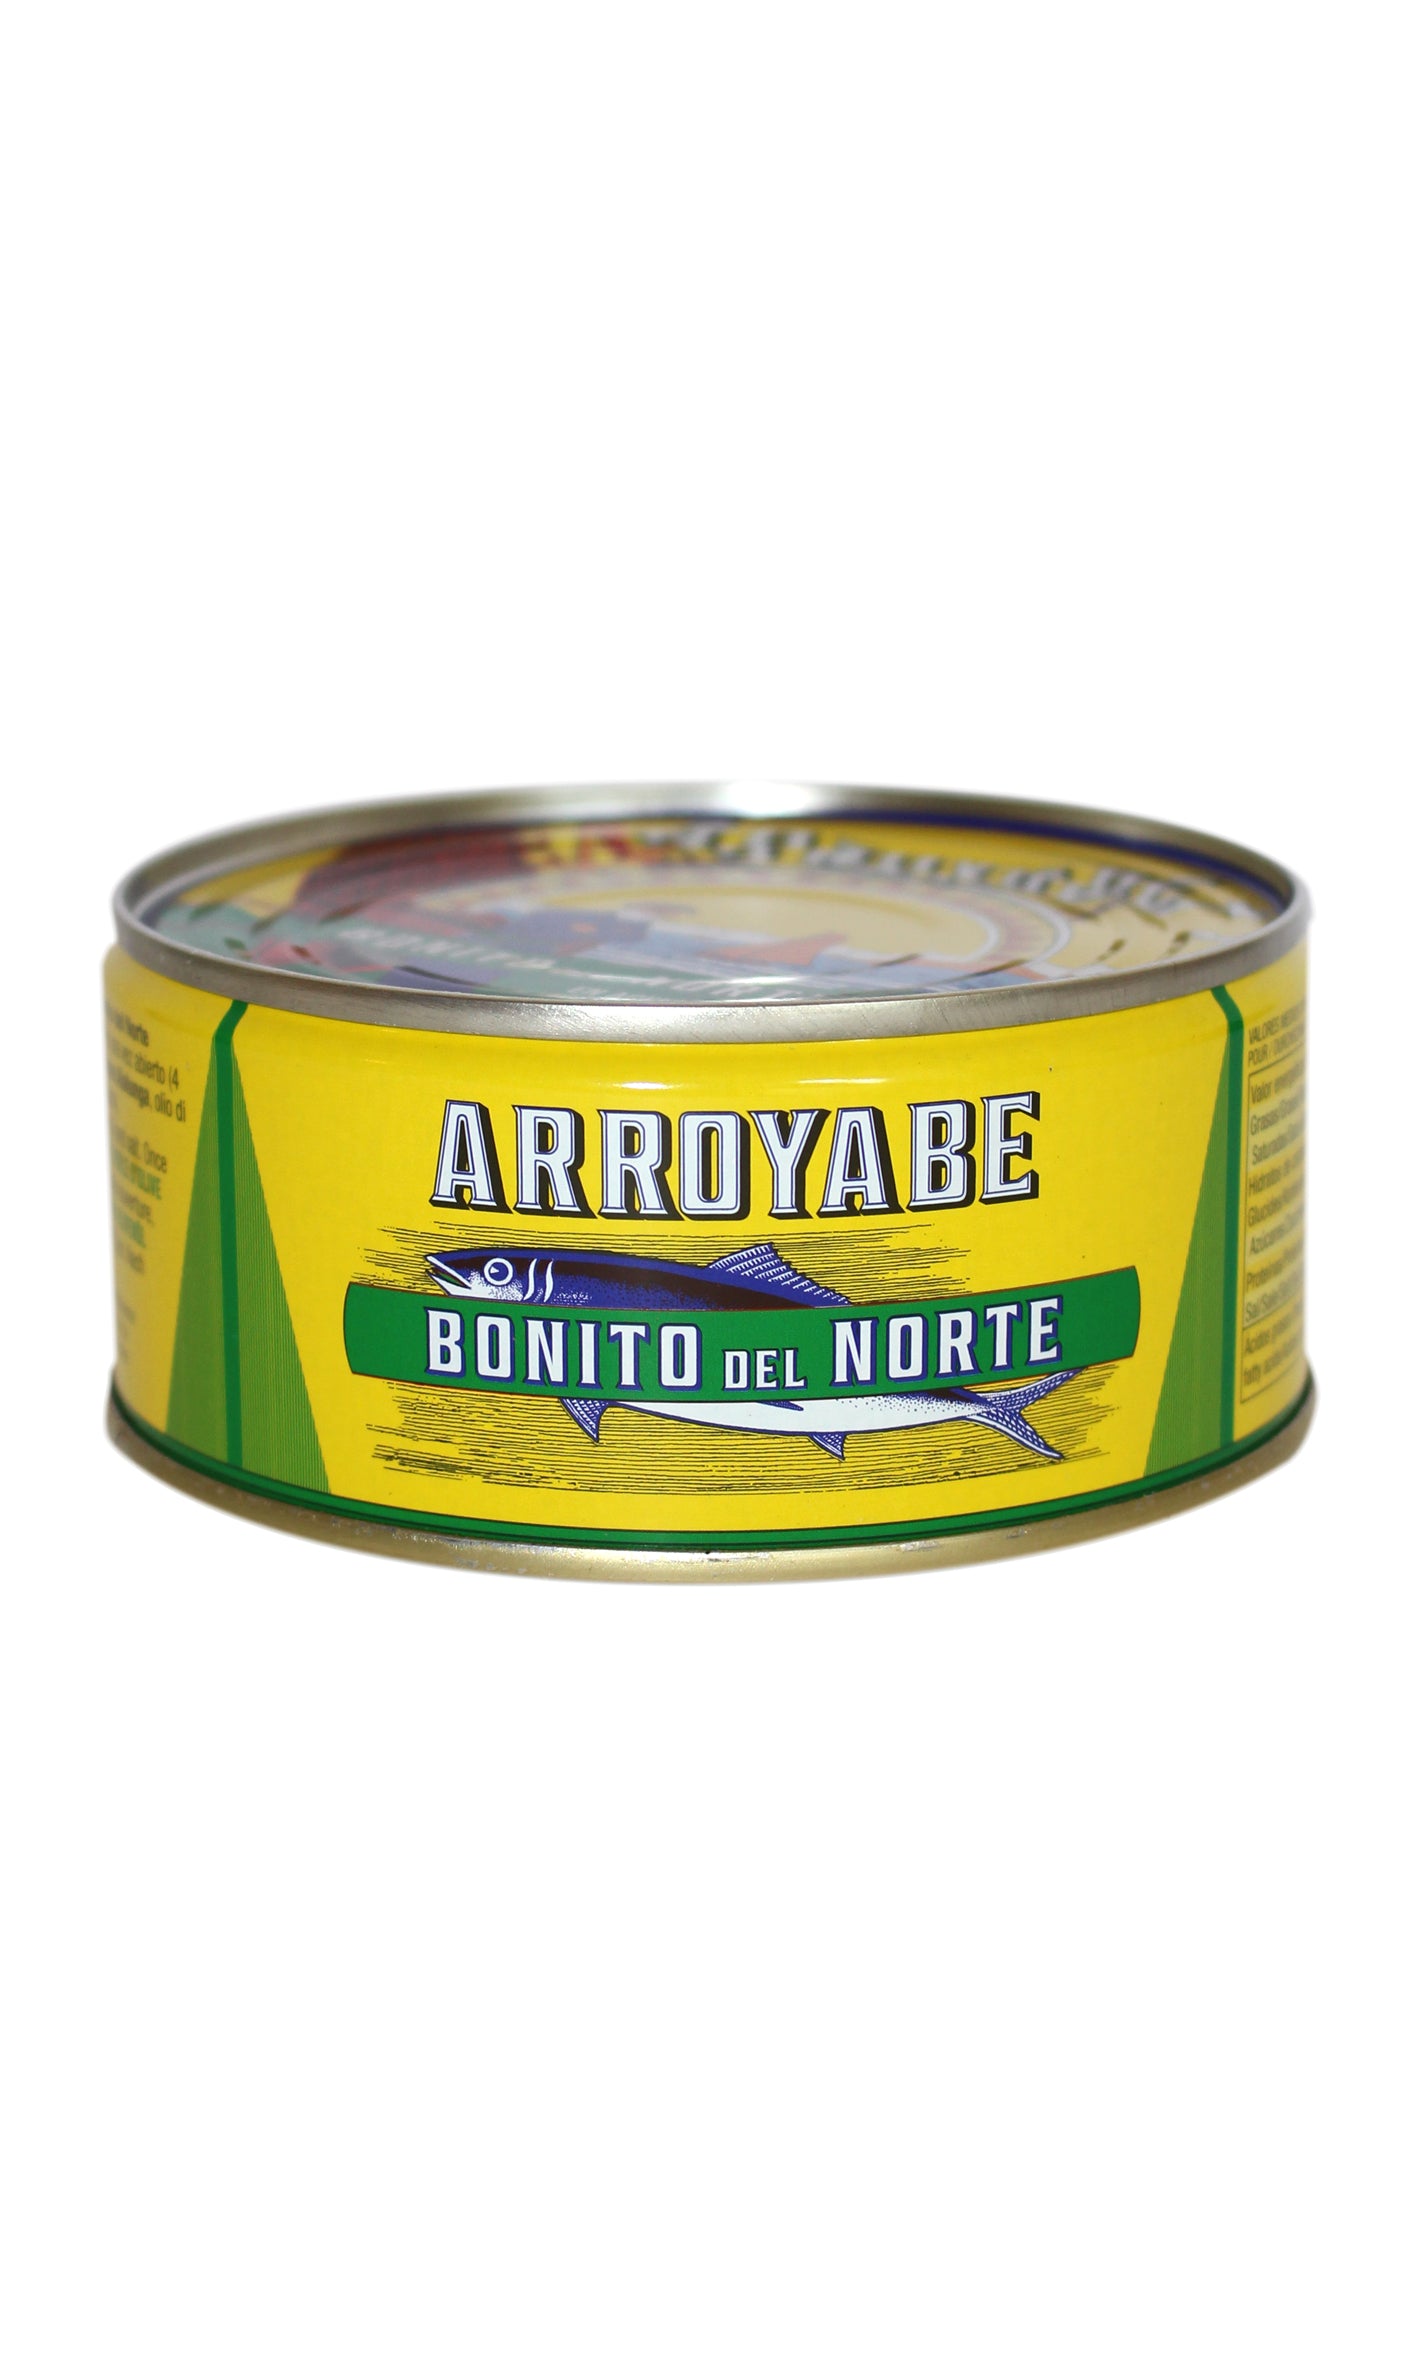 Arroyabe: Bonito Tuna in Olive Oil - 260g